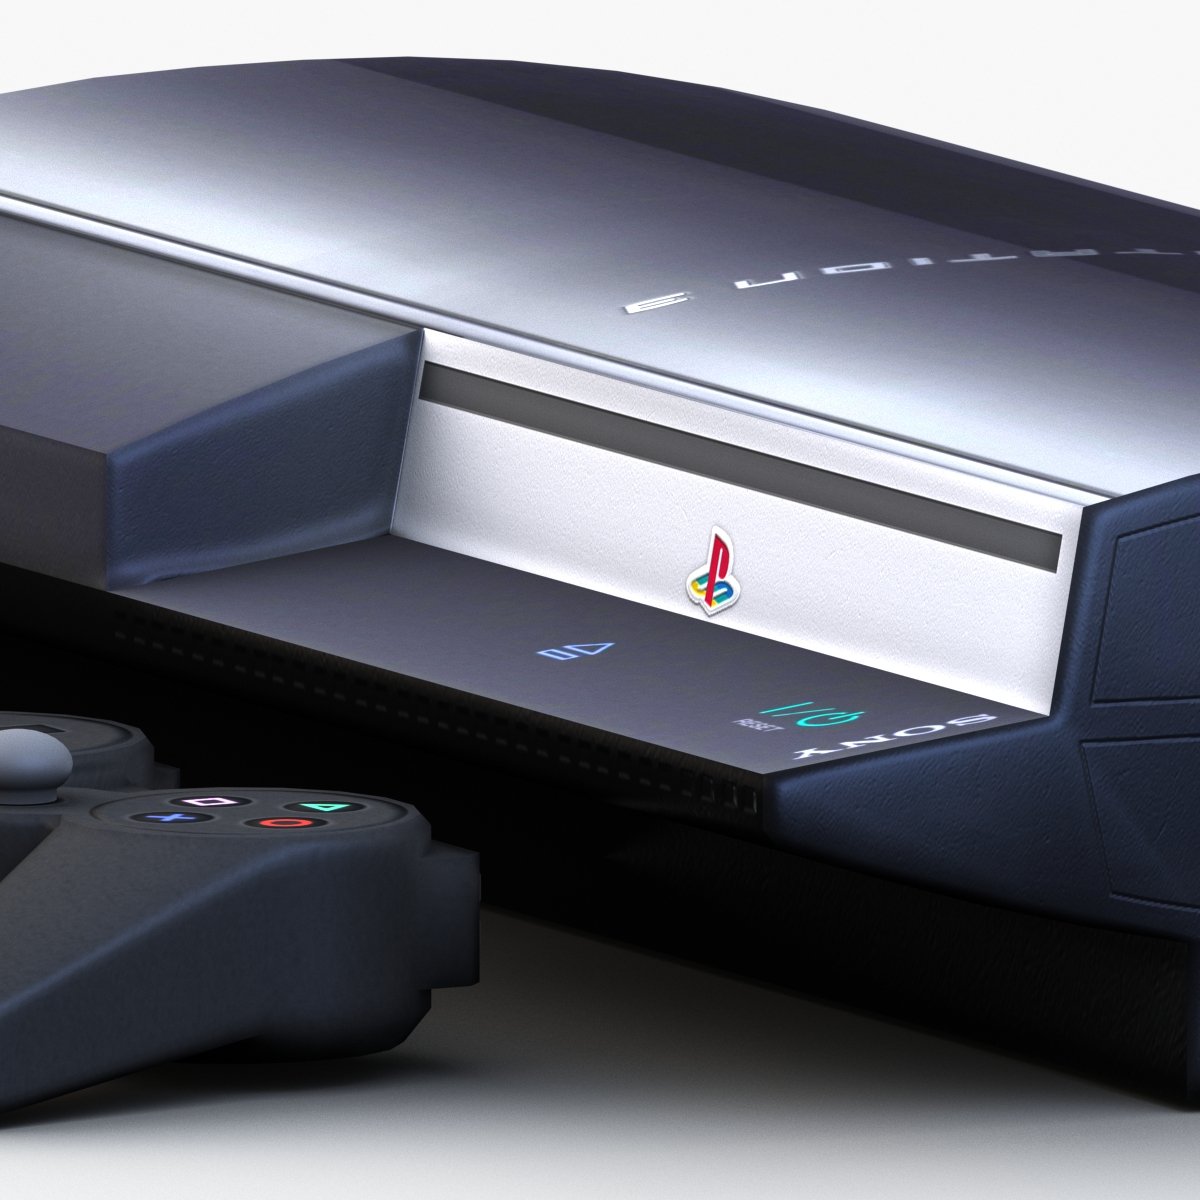 Sony PlayStation 2 3D model - Baixar Electrónica no